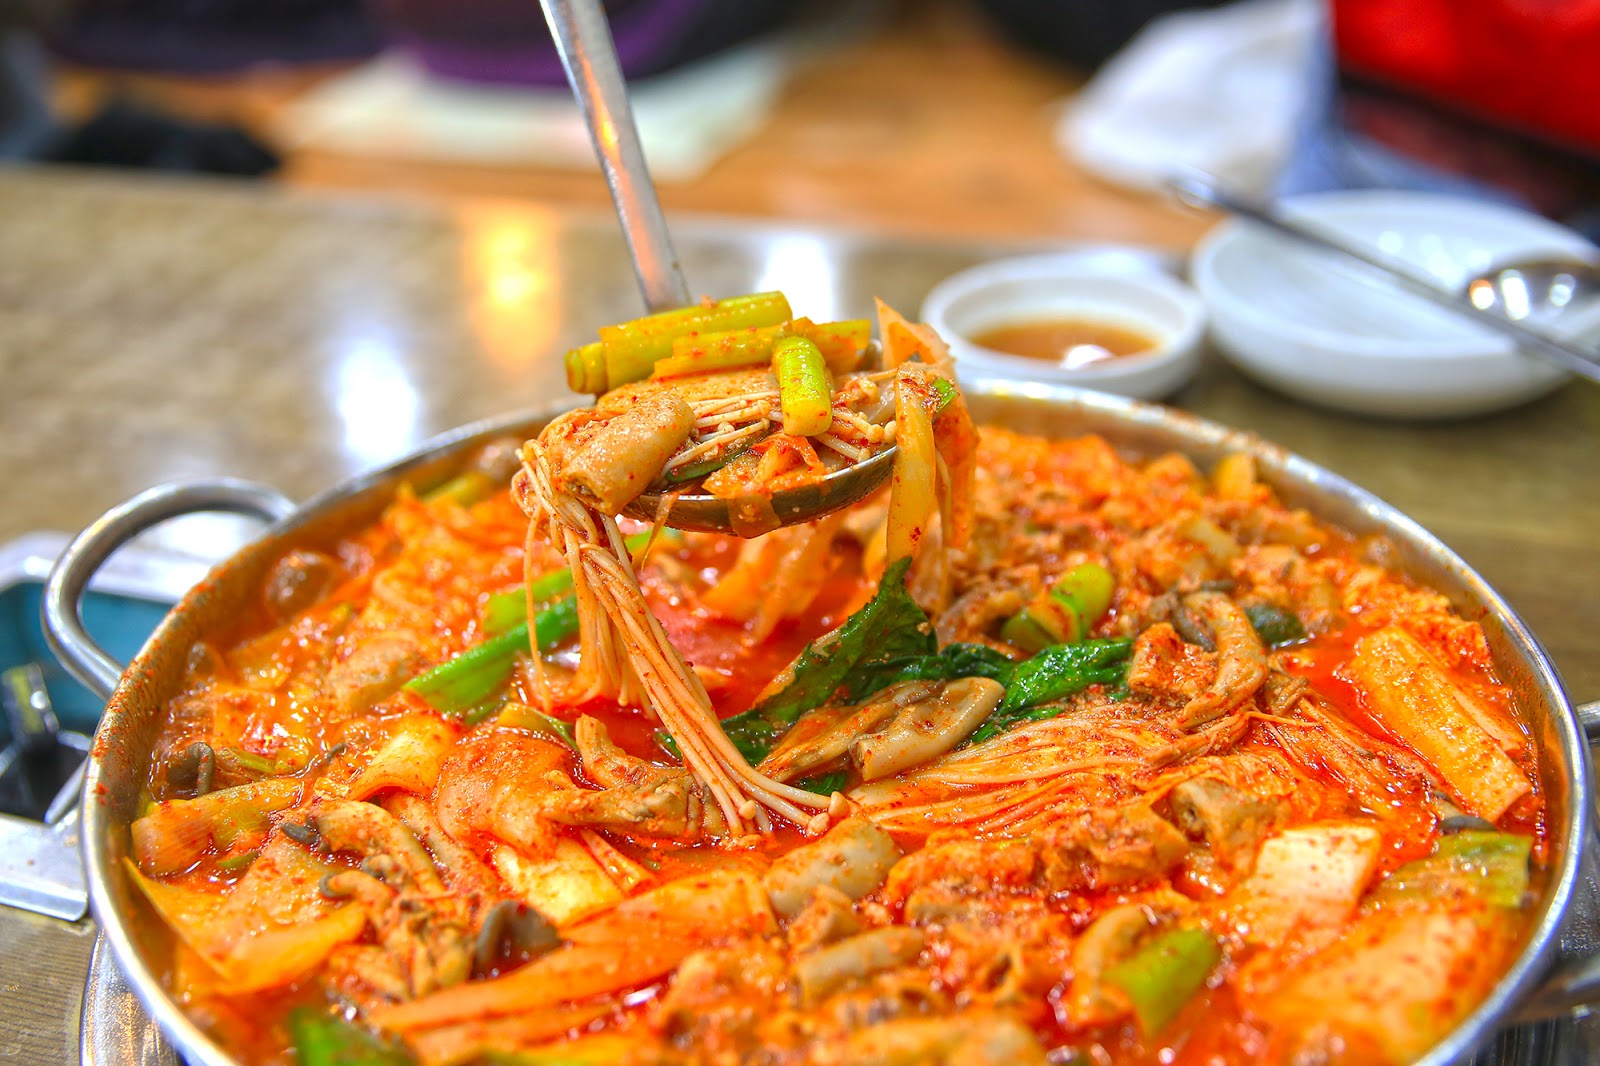 A kimchi stew upgrade? - Theheyheyhey